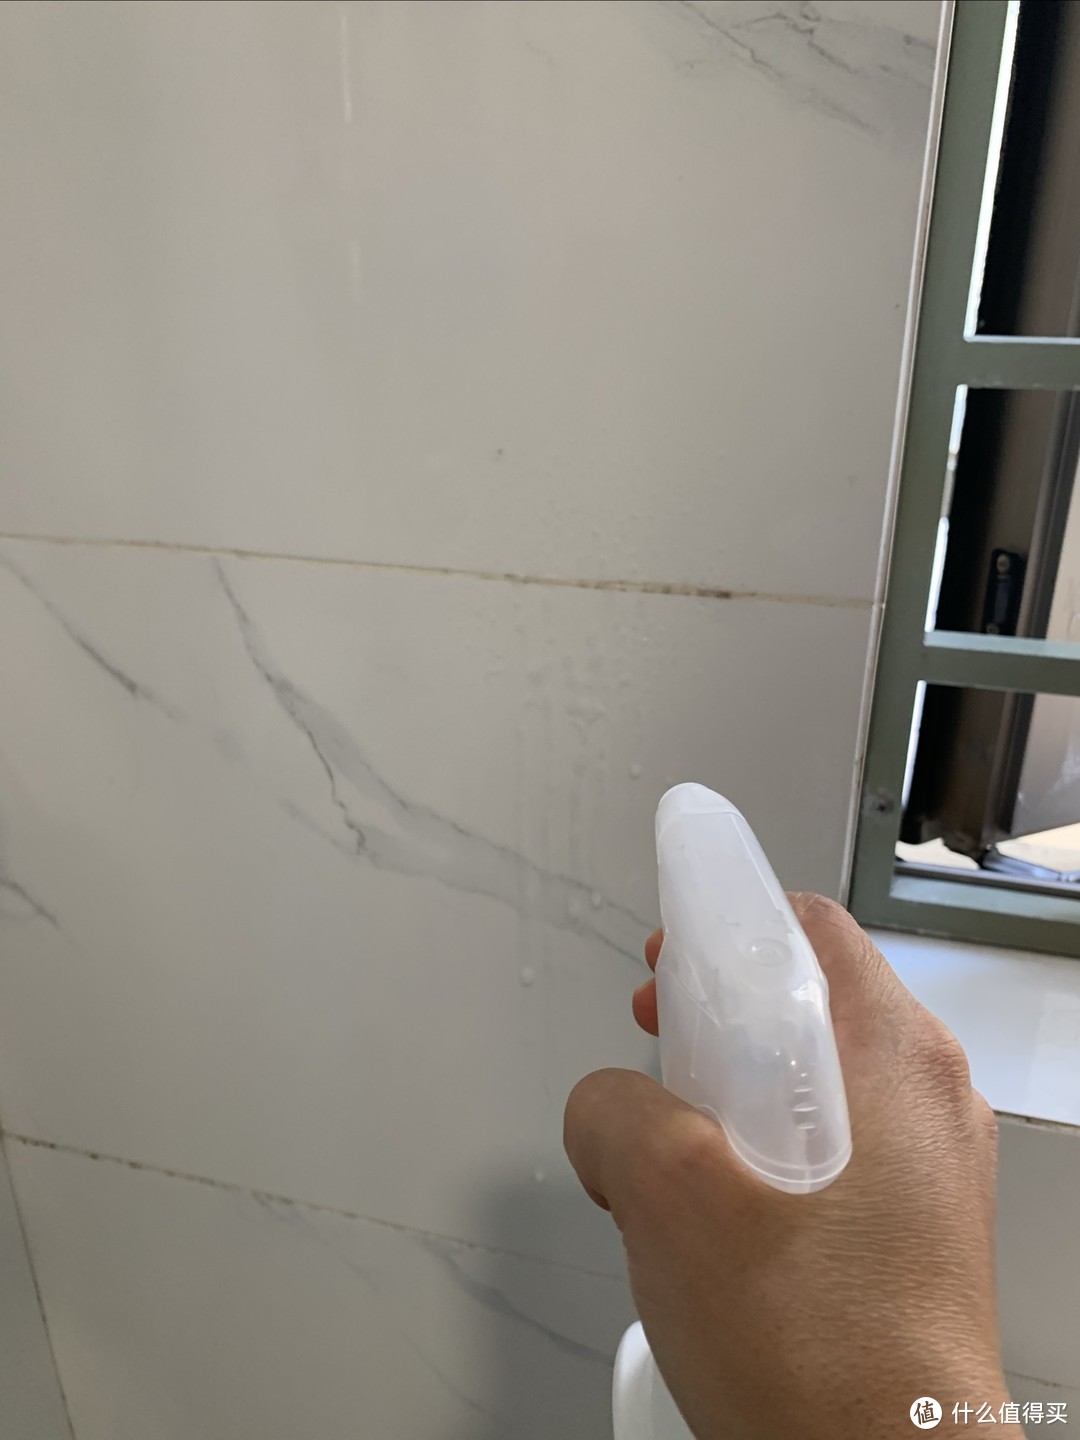 联合利华晶洁cif浴室清洁剂